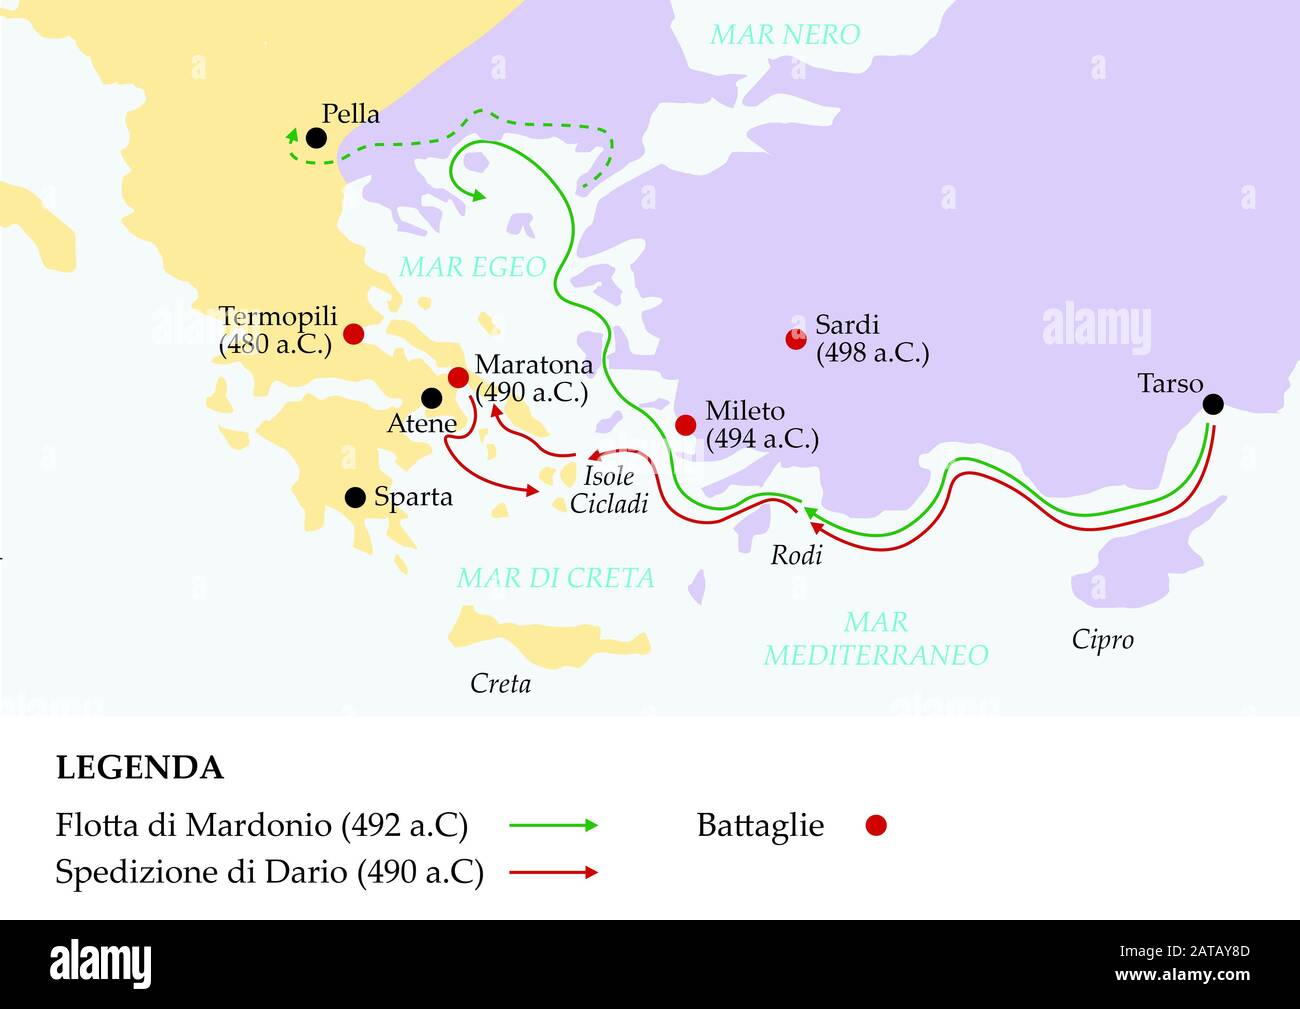 Mappa grecia antica raffigurante le batteglie e principali tappe delle Guerre Persiane. Stock Photo